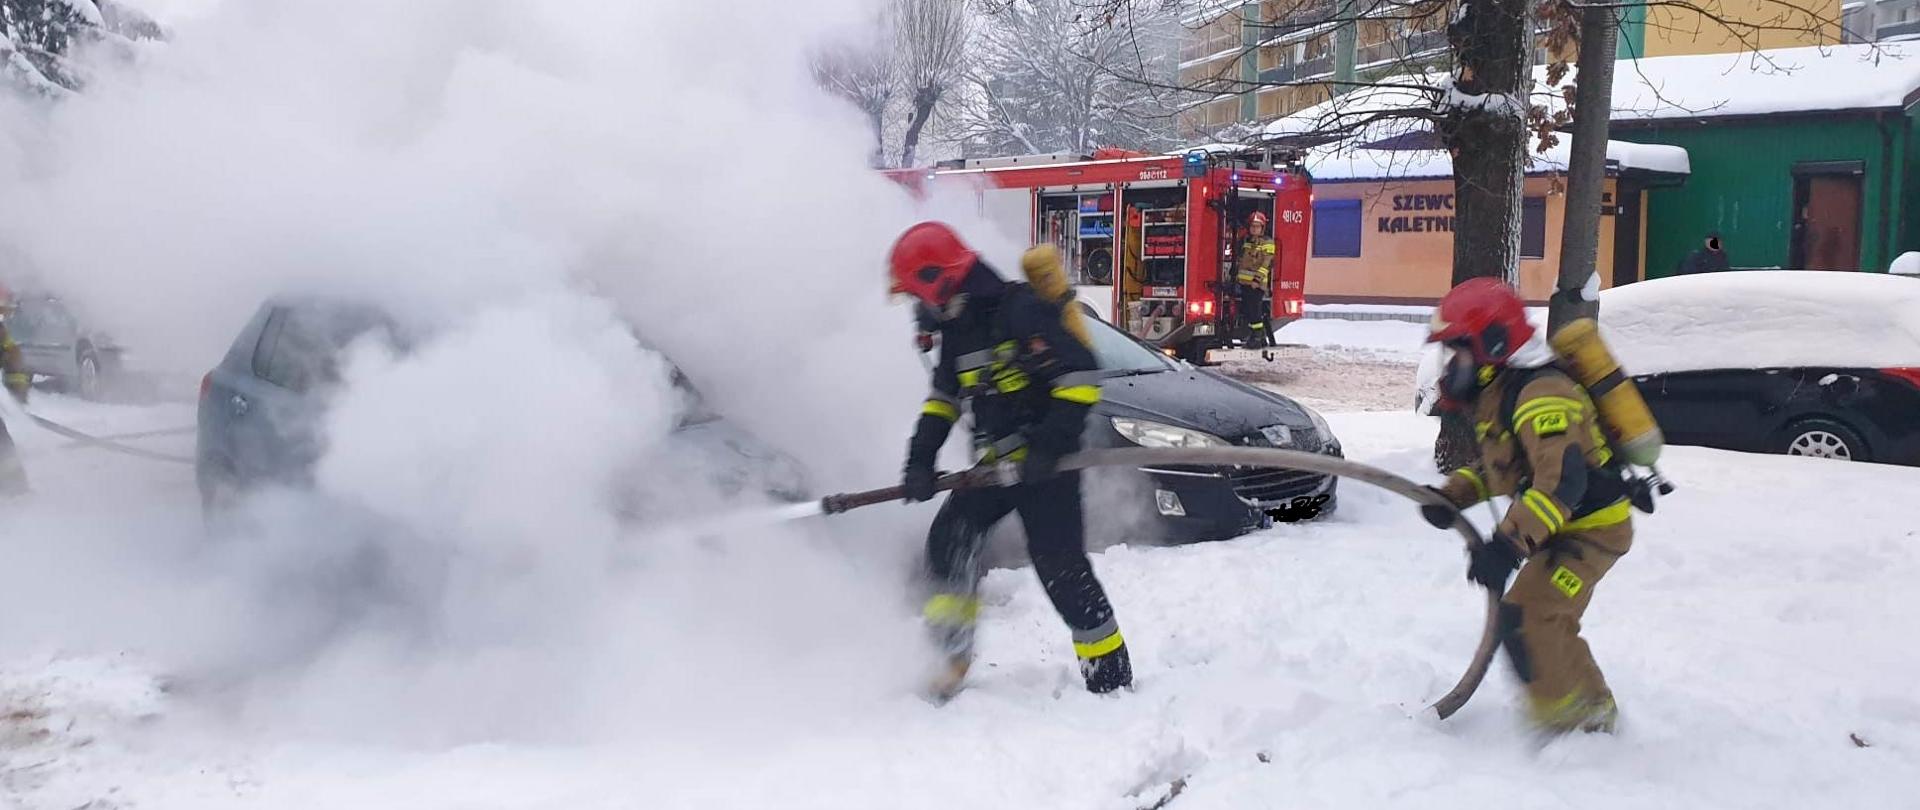 Palący się samochód gaszą strażacy ubrani w sprzęt ochrony układu oddechowego. W tle widać samochód pożarniczy i strażaka sterującego pracą autopompy. Obok pojazdu stoi inny samochód osobowy.